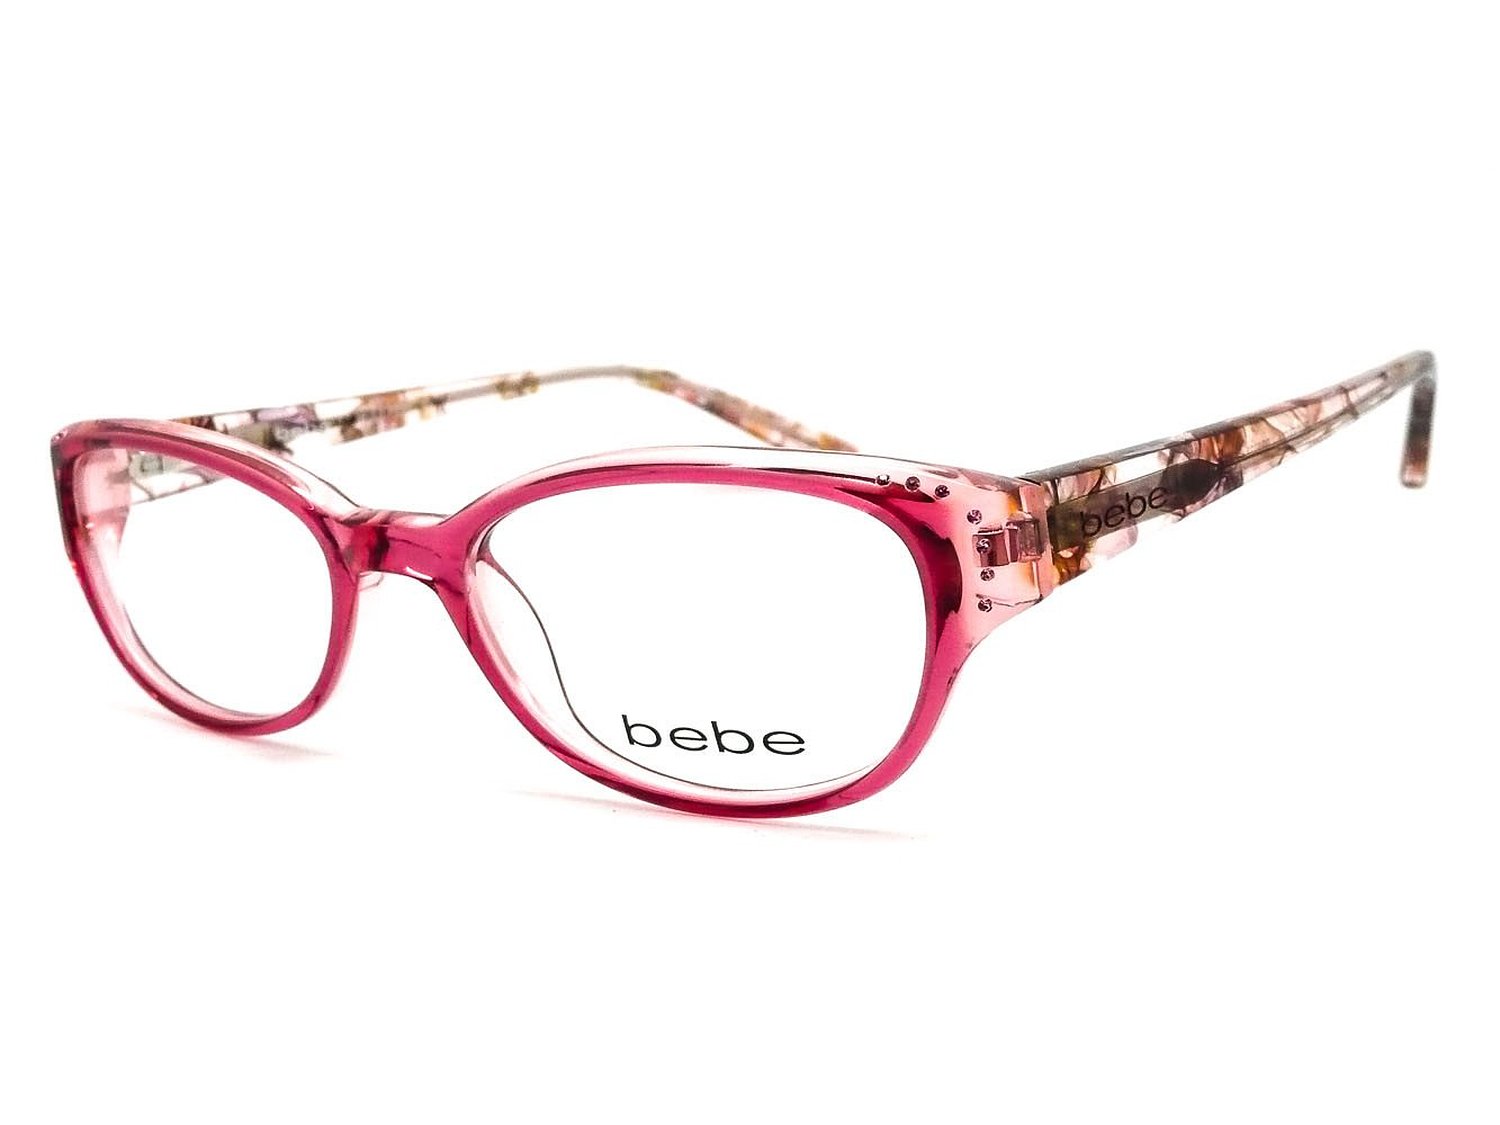 Bebe rose eyeglass frames